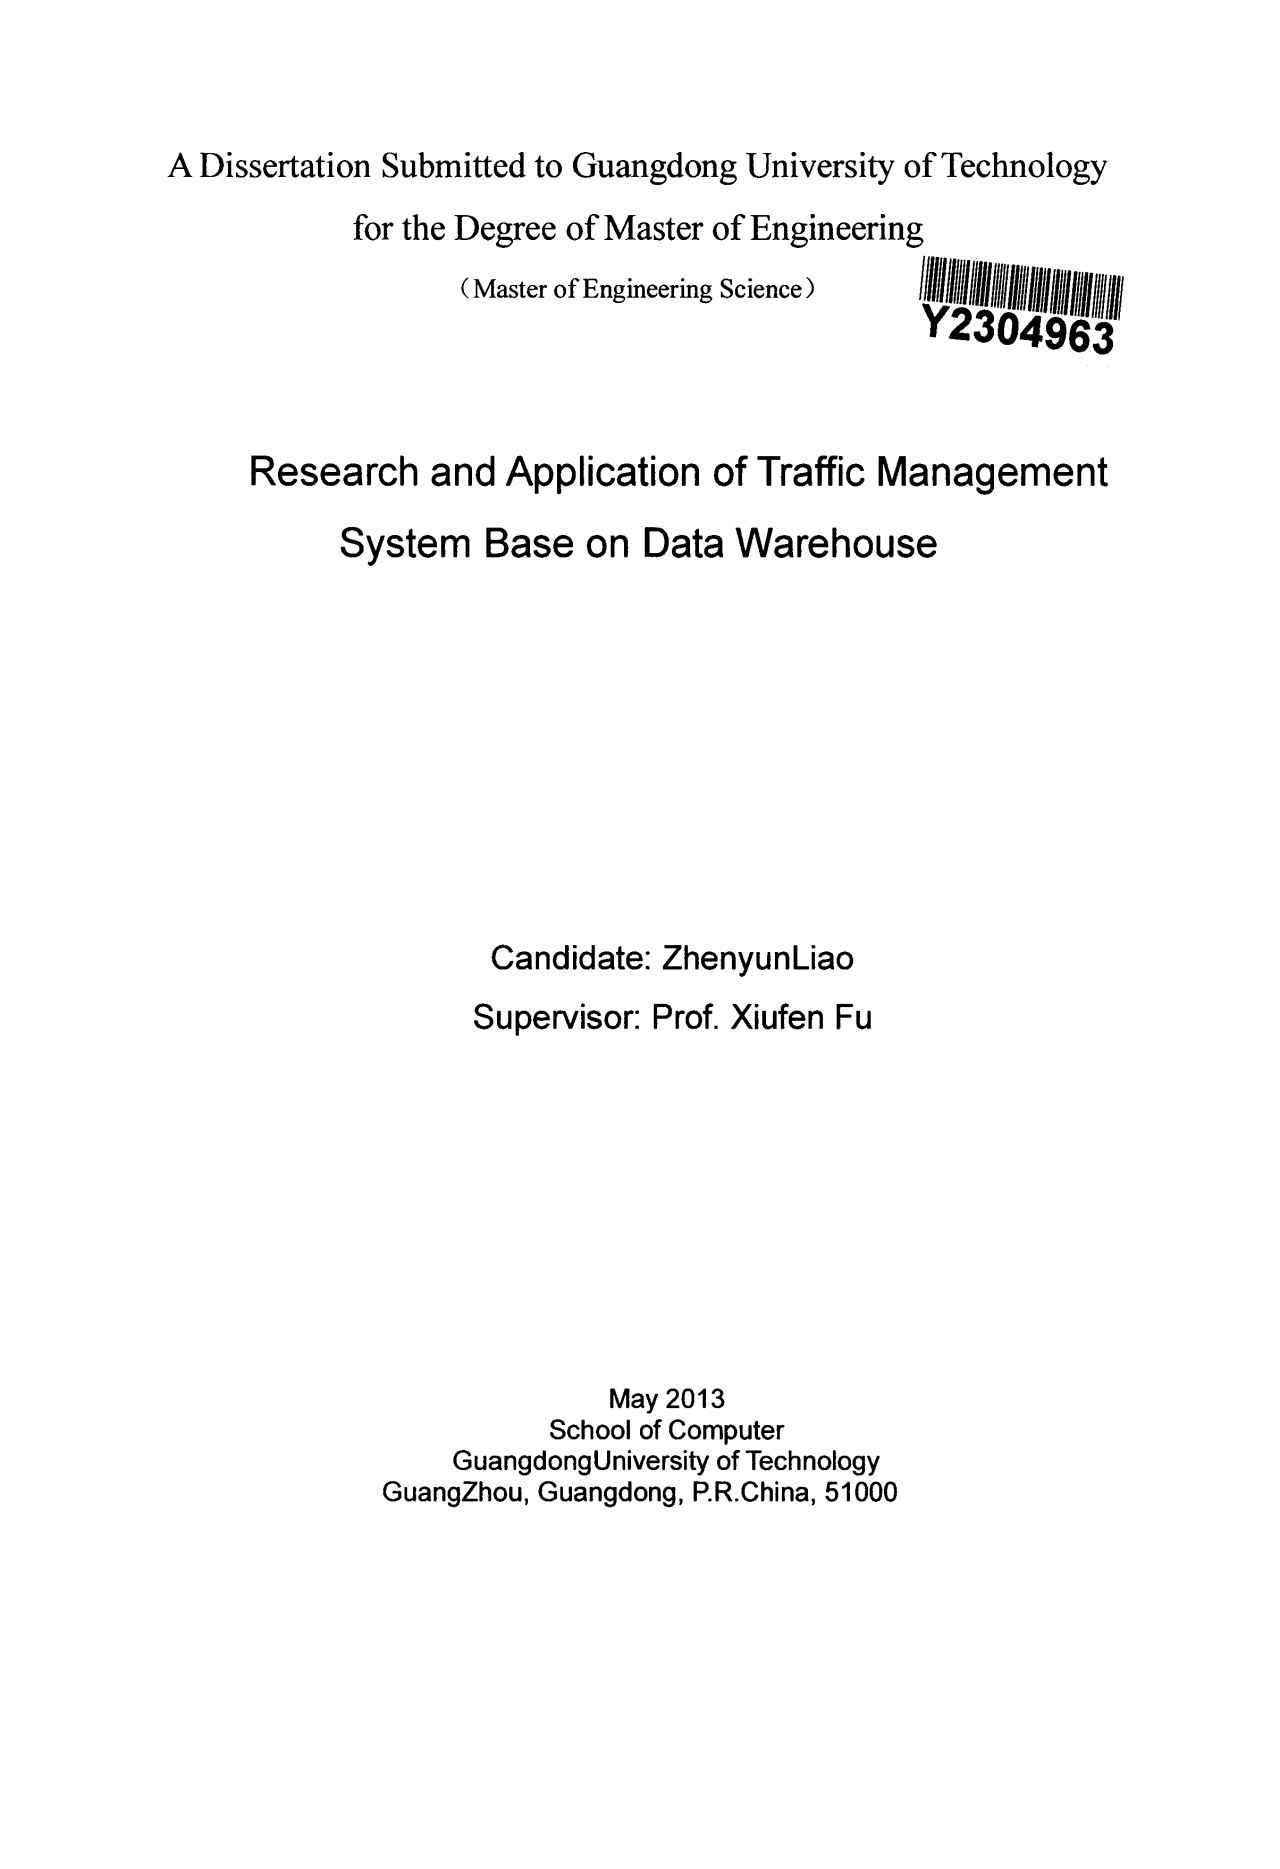 基于数据仓库技术的交通管理系统研究与应用